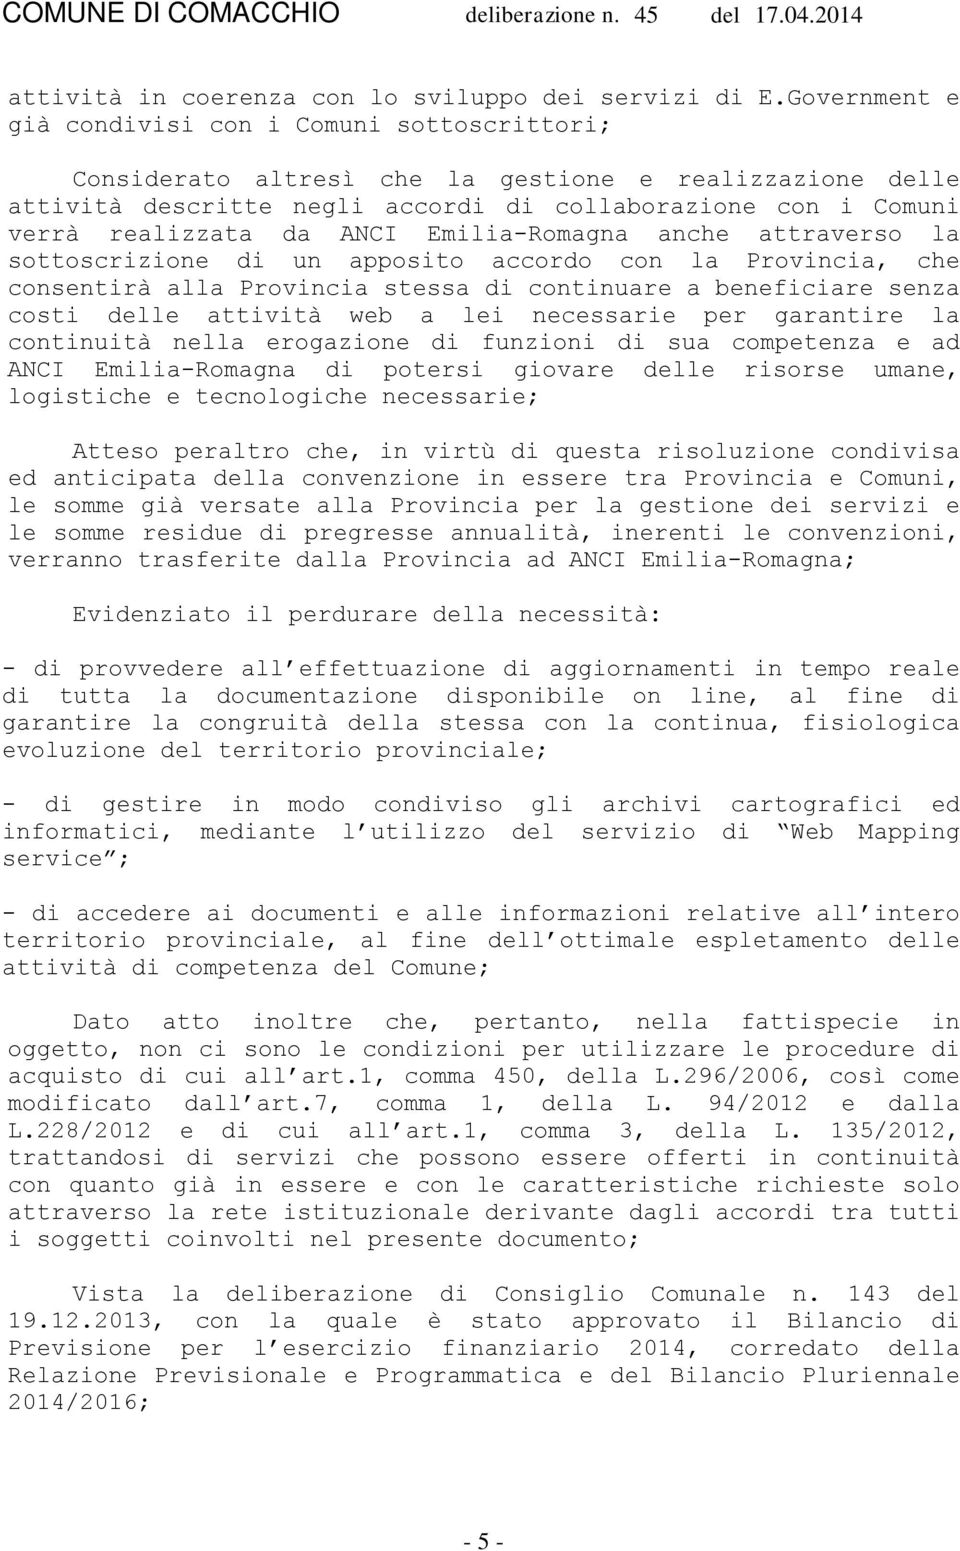 ANCI Emilia-Romagna anche attraverso la sottoscrizione di un apposito accordo con la Provincia, che consentirà alla Provincia stessa di continuare a beneficiare senza costi delle attività web a lei